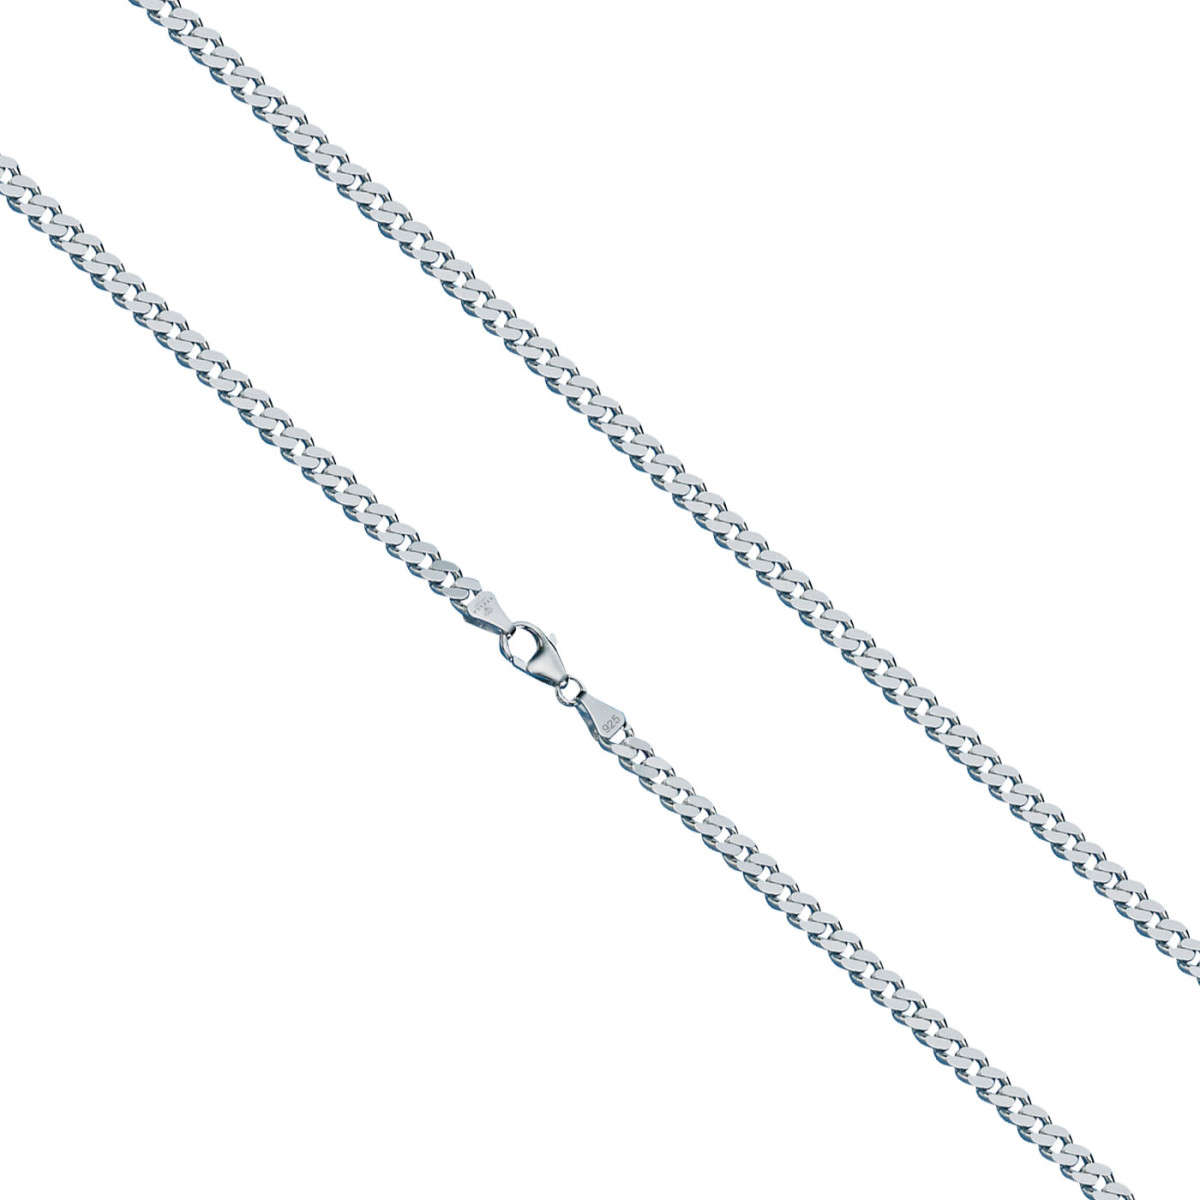 INCOLLECTIONS Damen-Halskette 925/000 Sterlingsilber Panzerkette 1,3 mm breit 